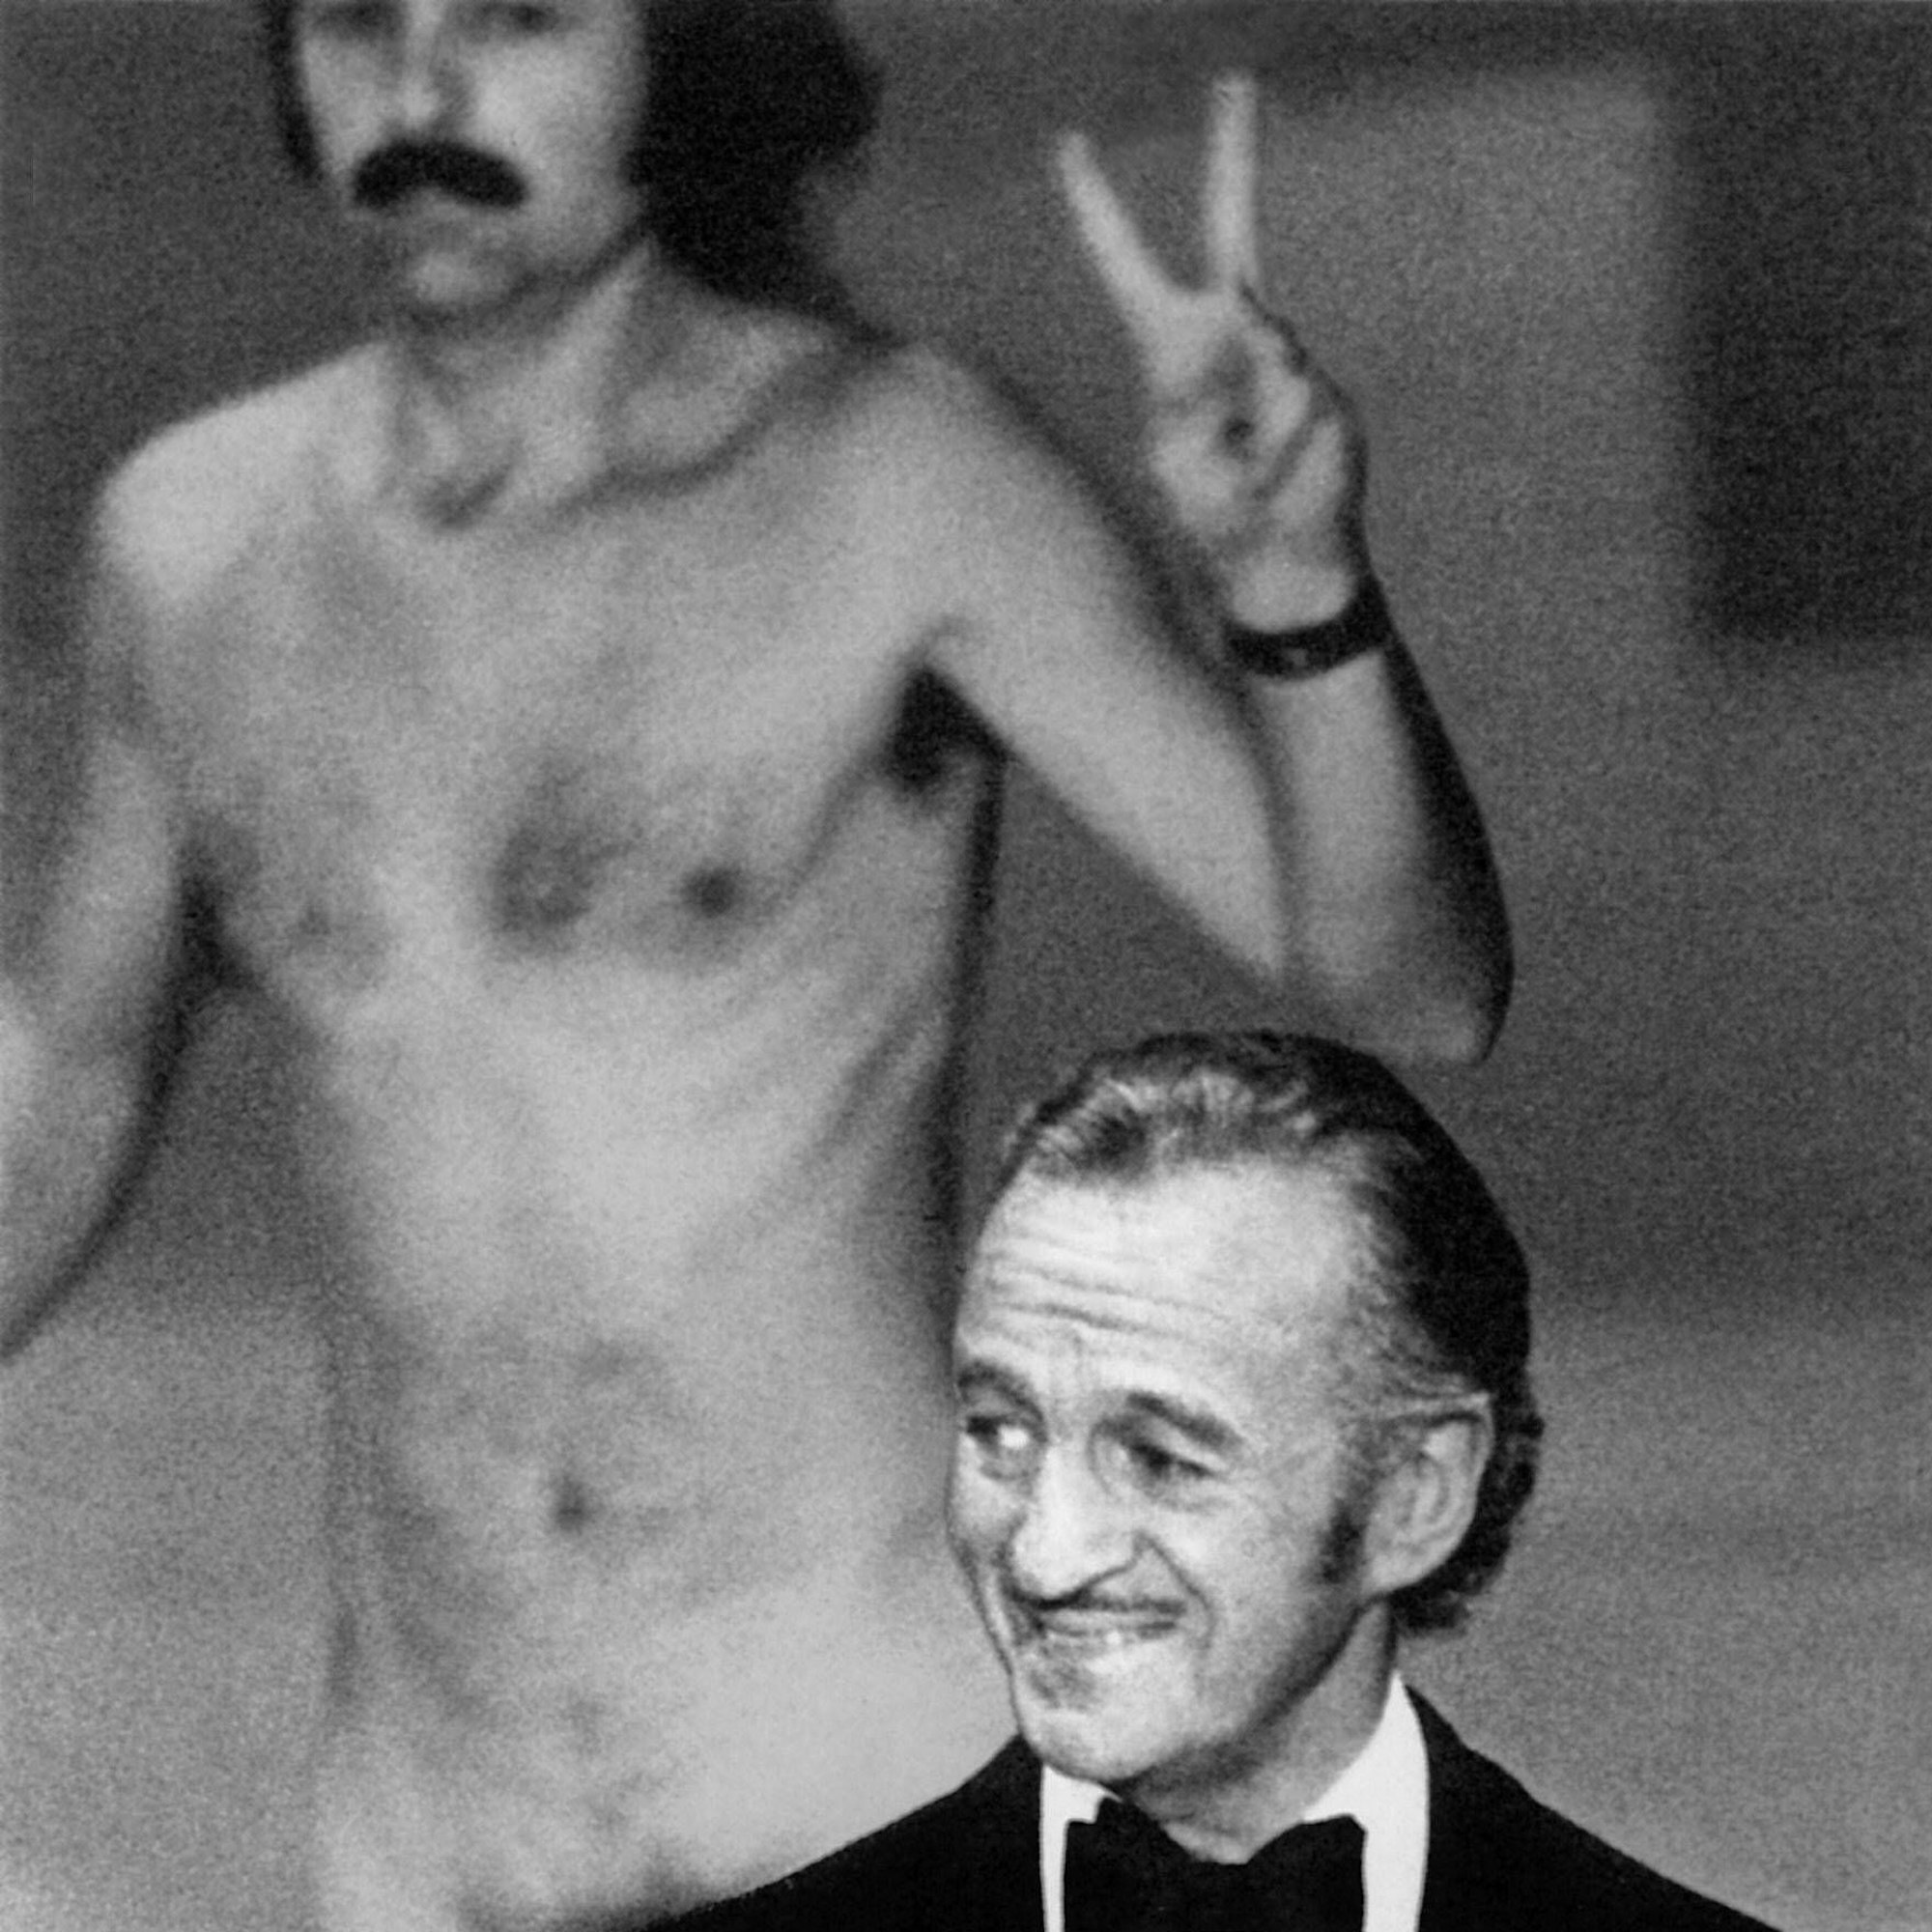 David Niven hatte noch nicht bemerkt, dass hinter ihm der Fotograf und Galerist Robert Opel nackt über die Bühne rannte.